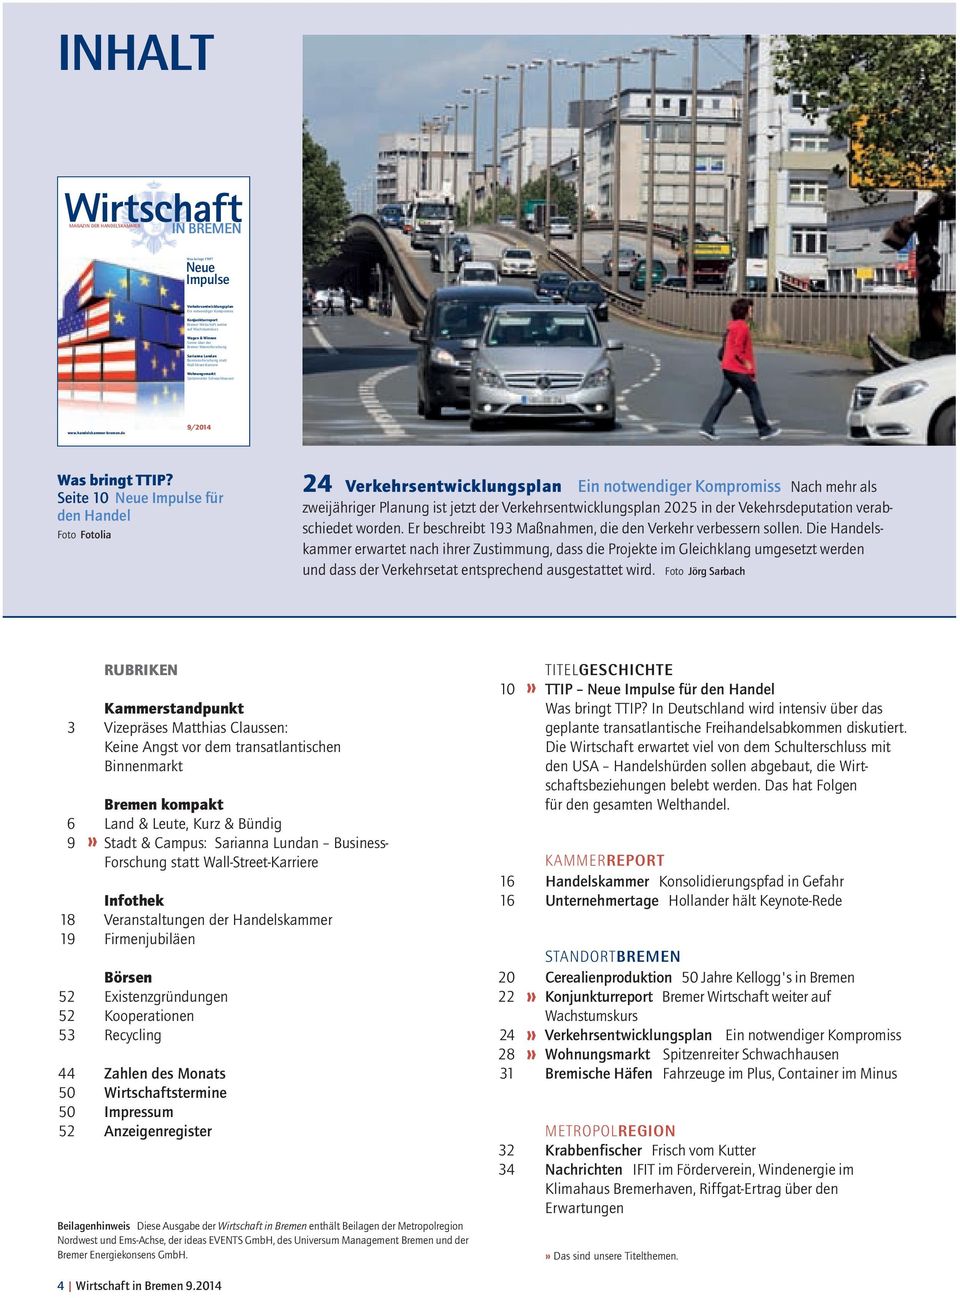 Wall-Street-Karriere Wohugsmarkt Spitzereiter Schwachhause www.hadelskammer-breme.de 9/2014 Was brigt TTIP?